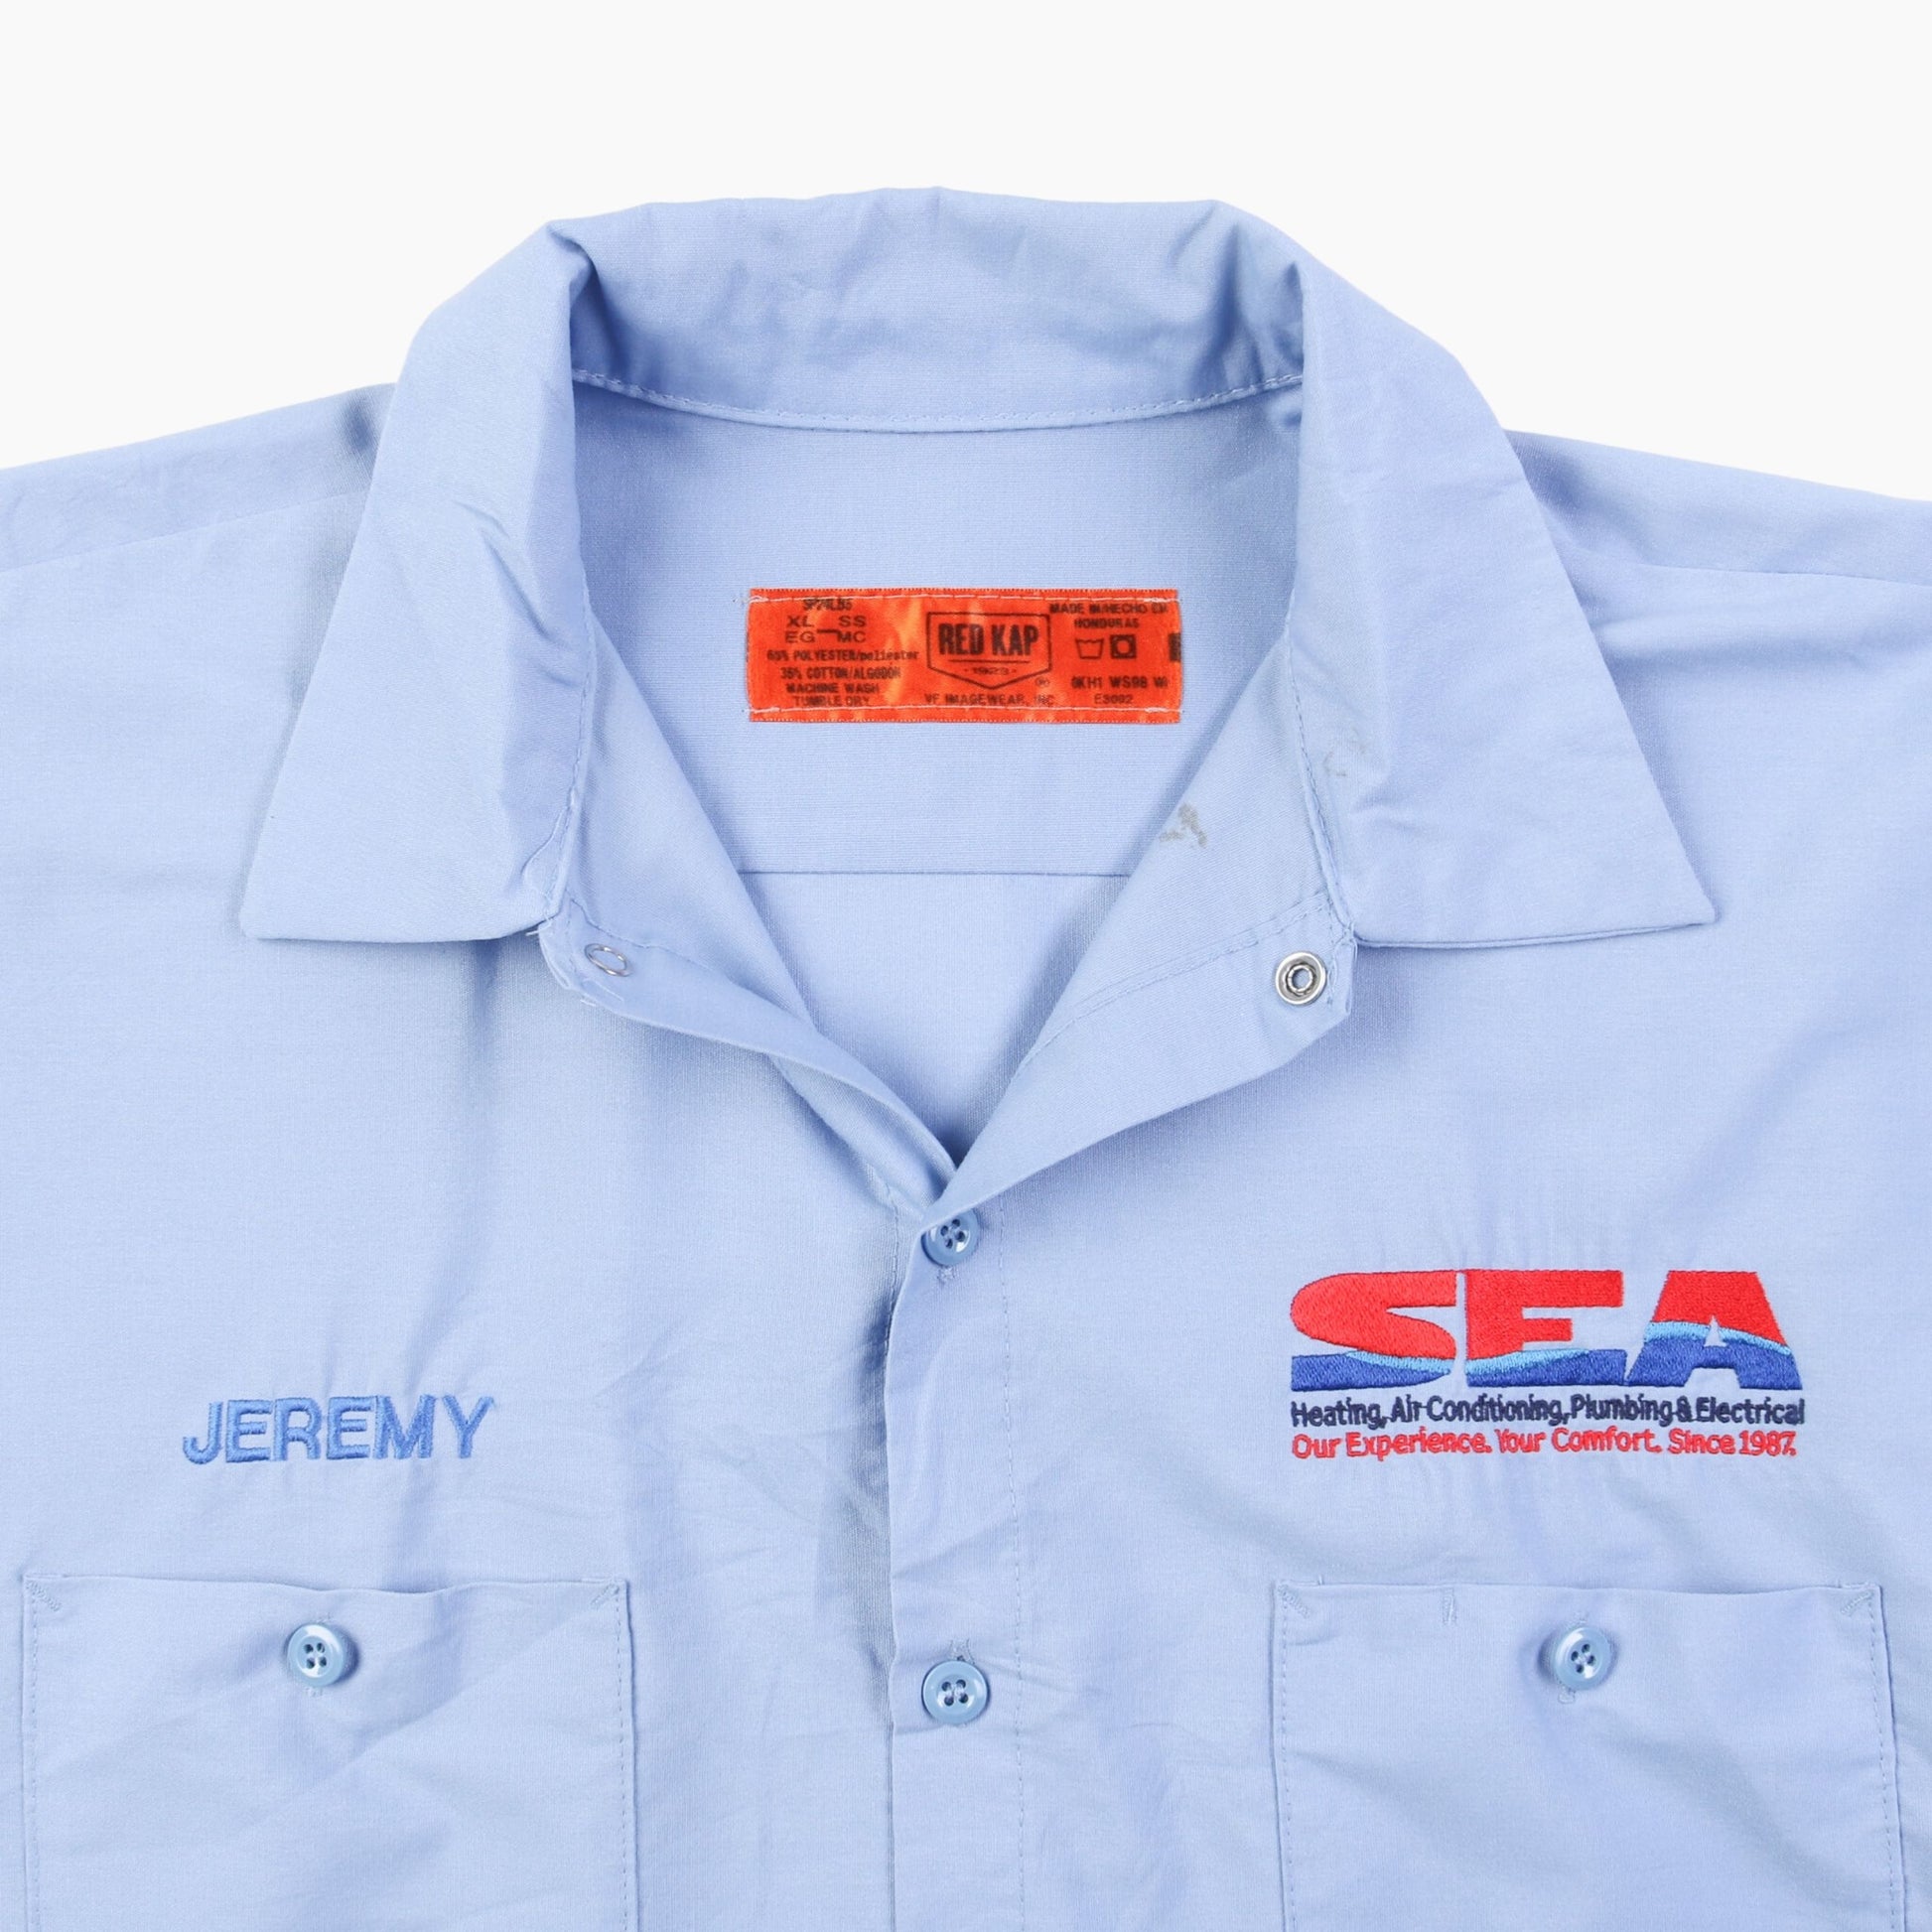 'Jeremy' Garage Work Shirt - American Madness